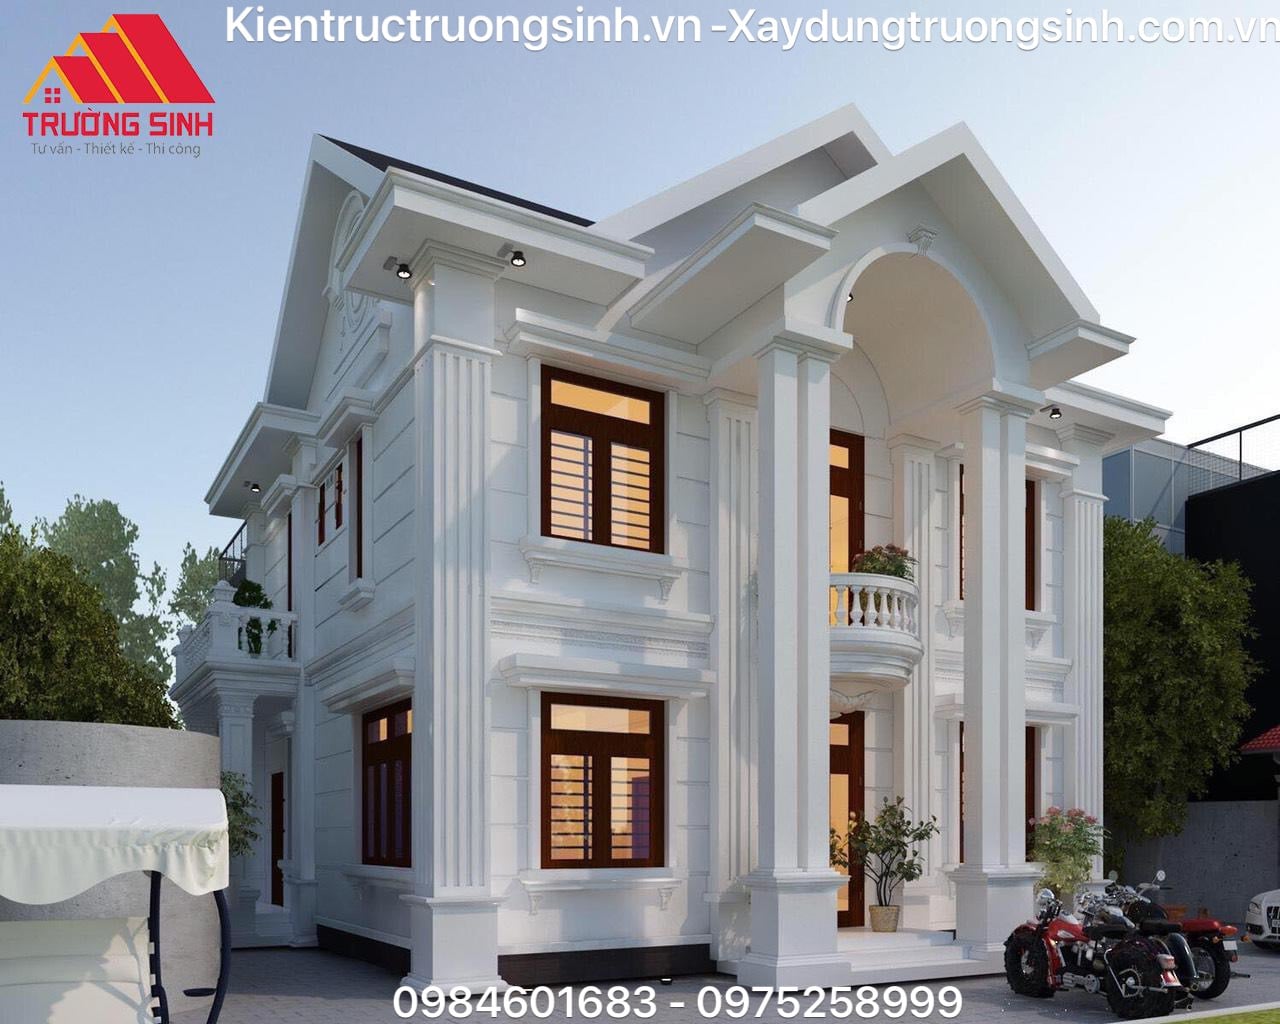 Dự án thiết kế, xây biệt thự trọn gói nhà chị Hạnh tại Tỉnh Hà Nam